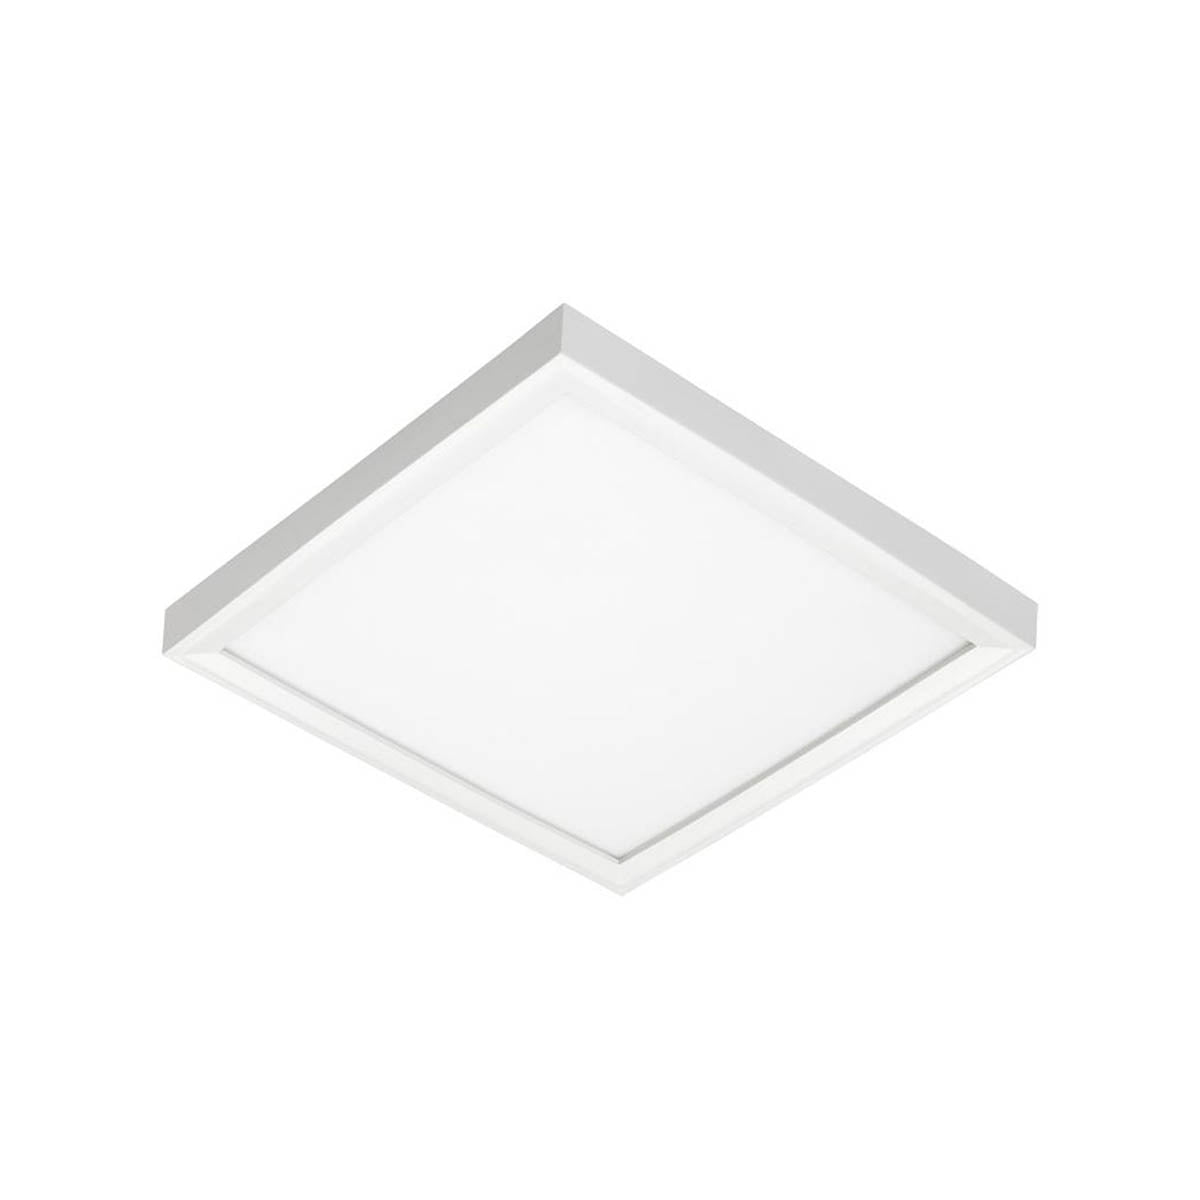 JSFSQ LED Square Disk Light 1300 Lumens 3000K 120-277V White finish - Bees Lighting